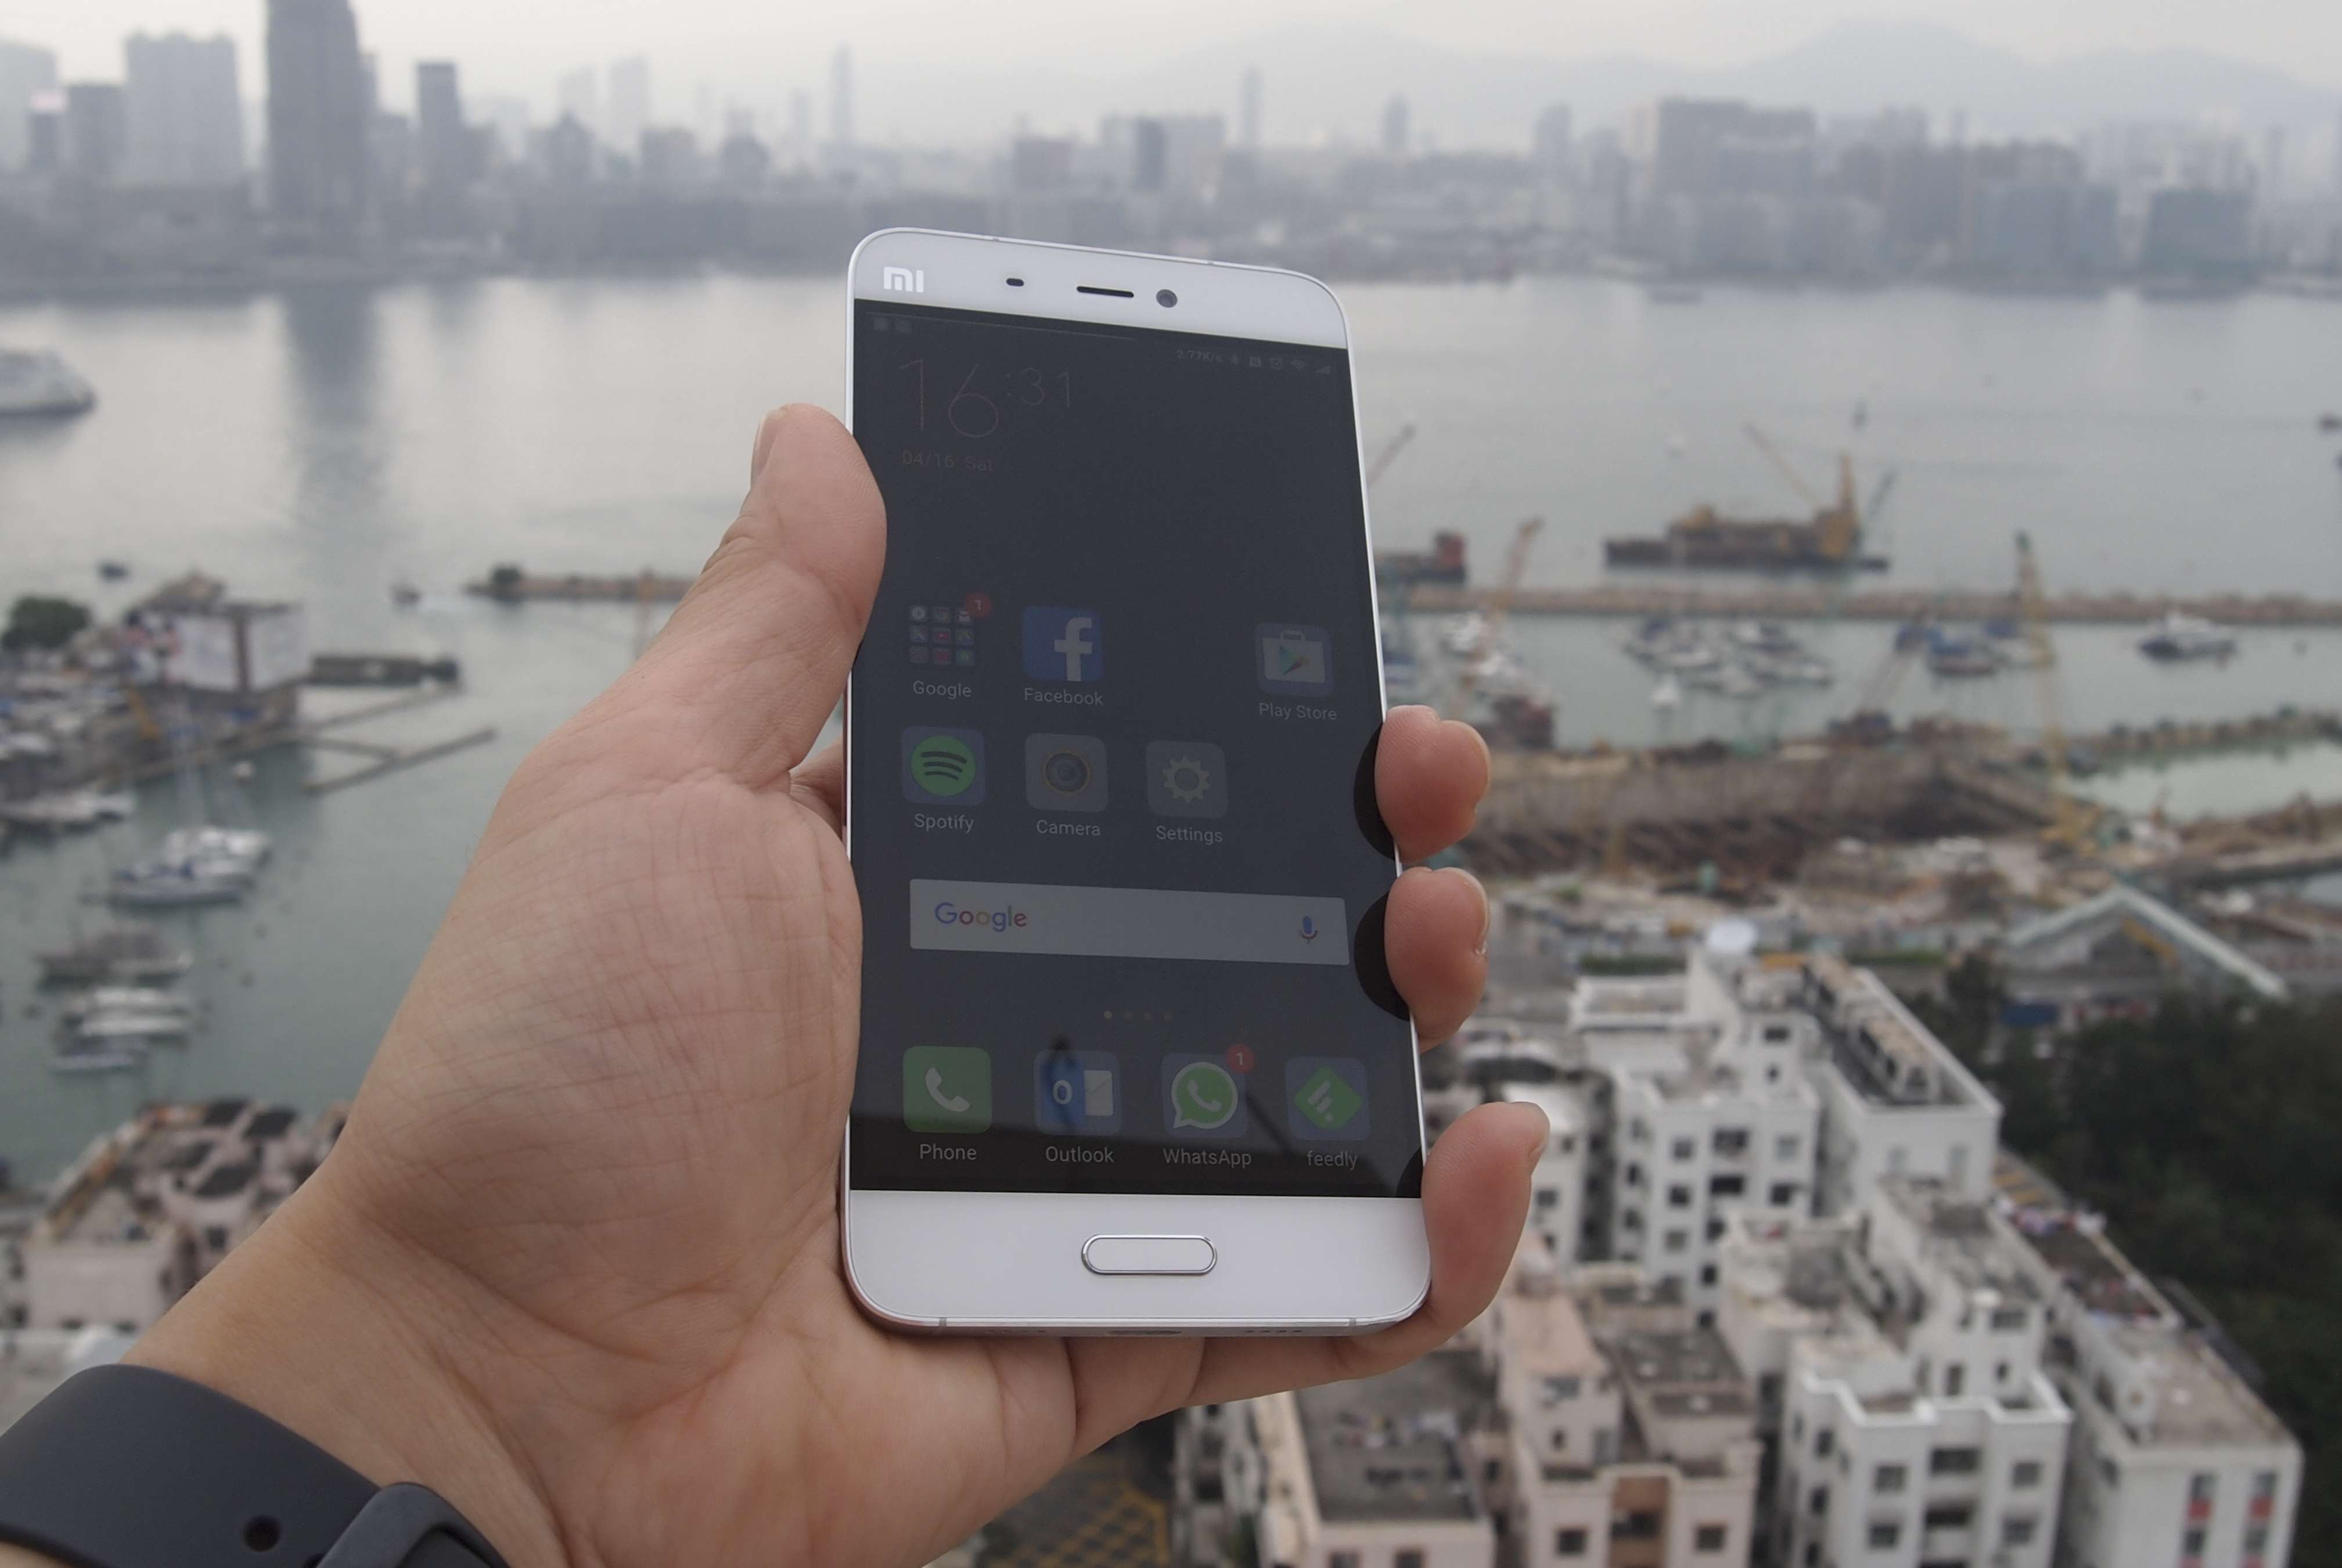 The Xiaomi Mi 5 smartphone. Photos: Eric Wong